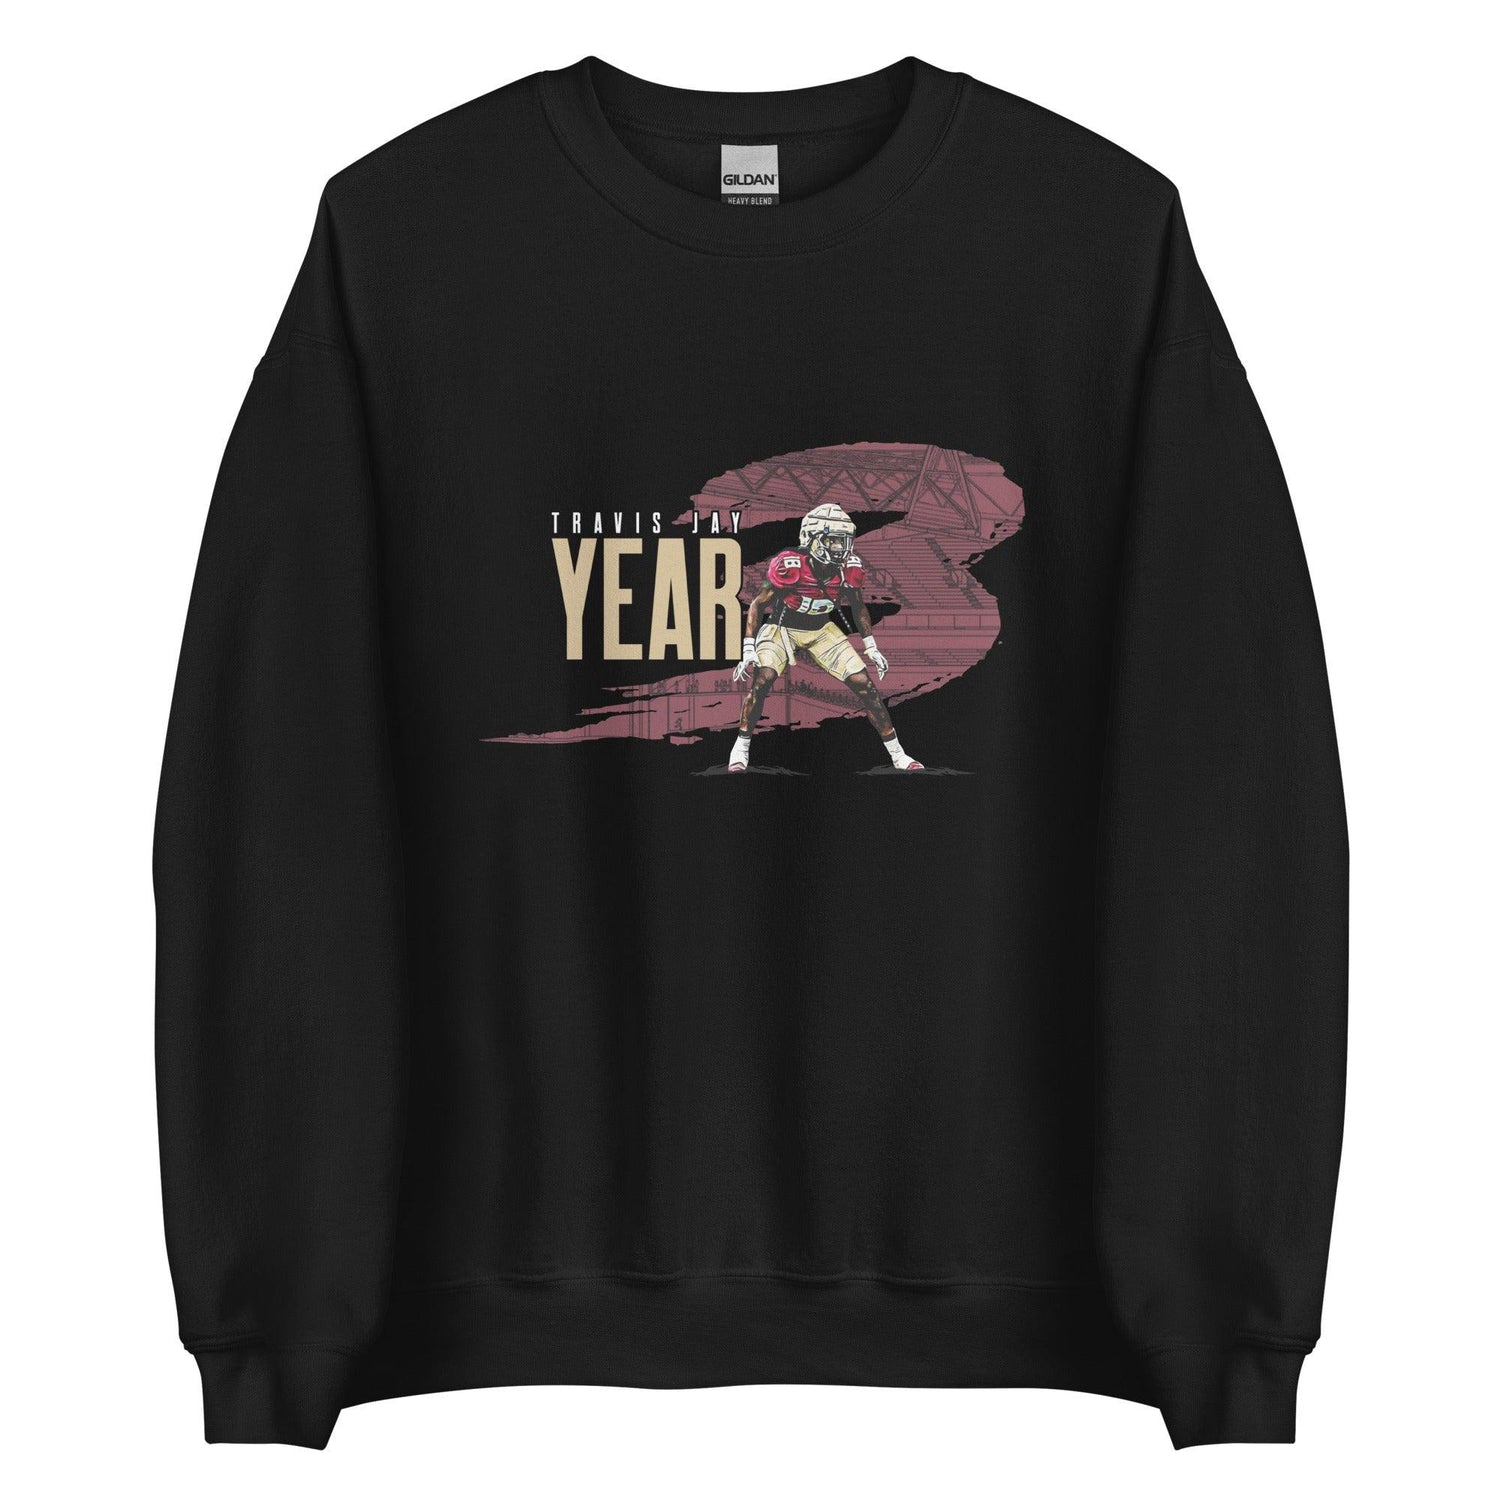 Travis Jay "Year 3" Sweatshirt - Fan Arch